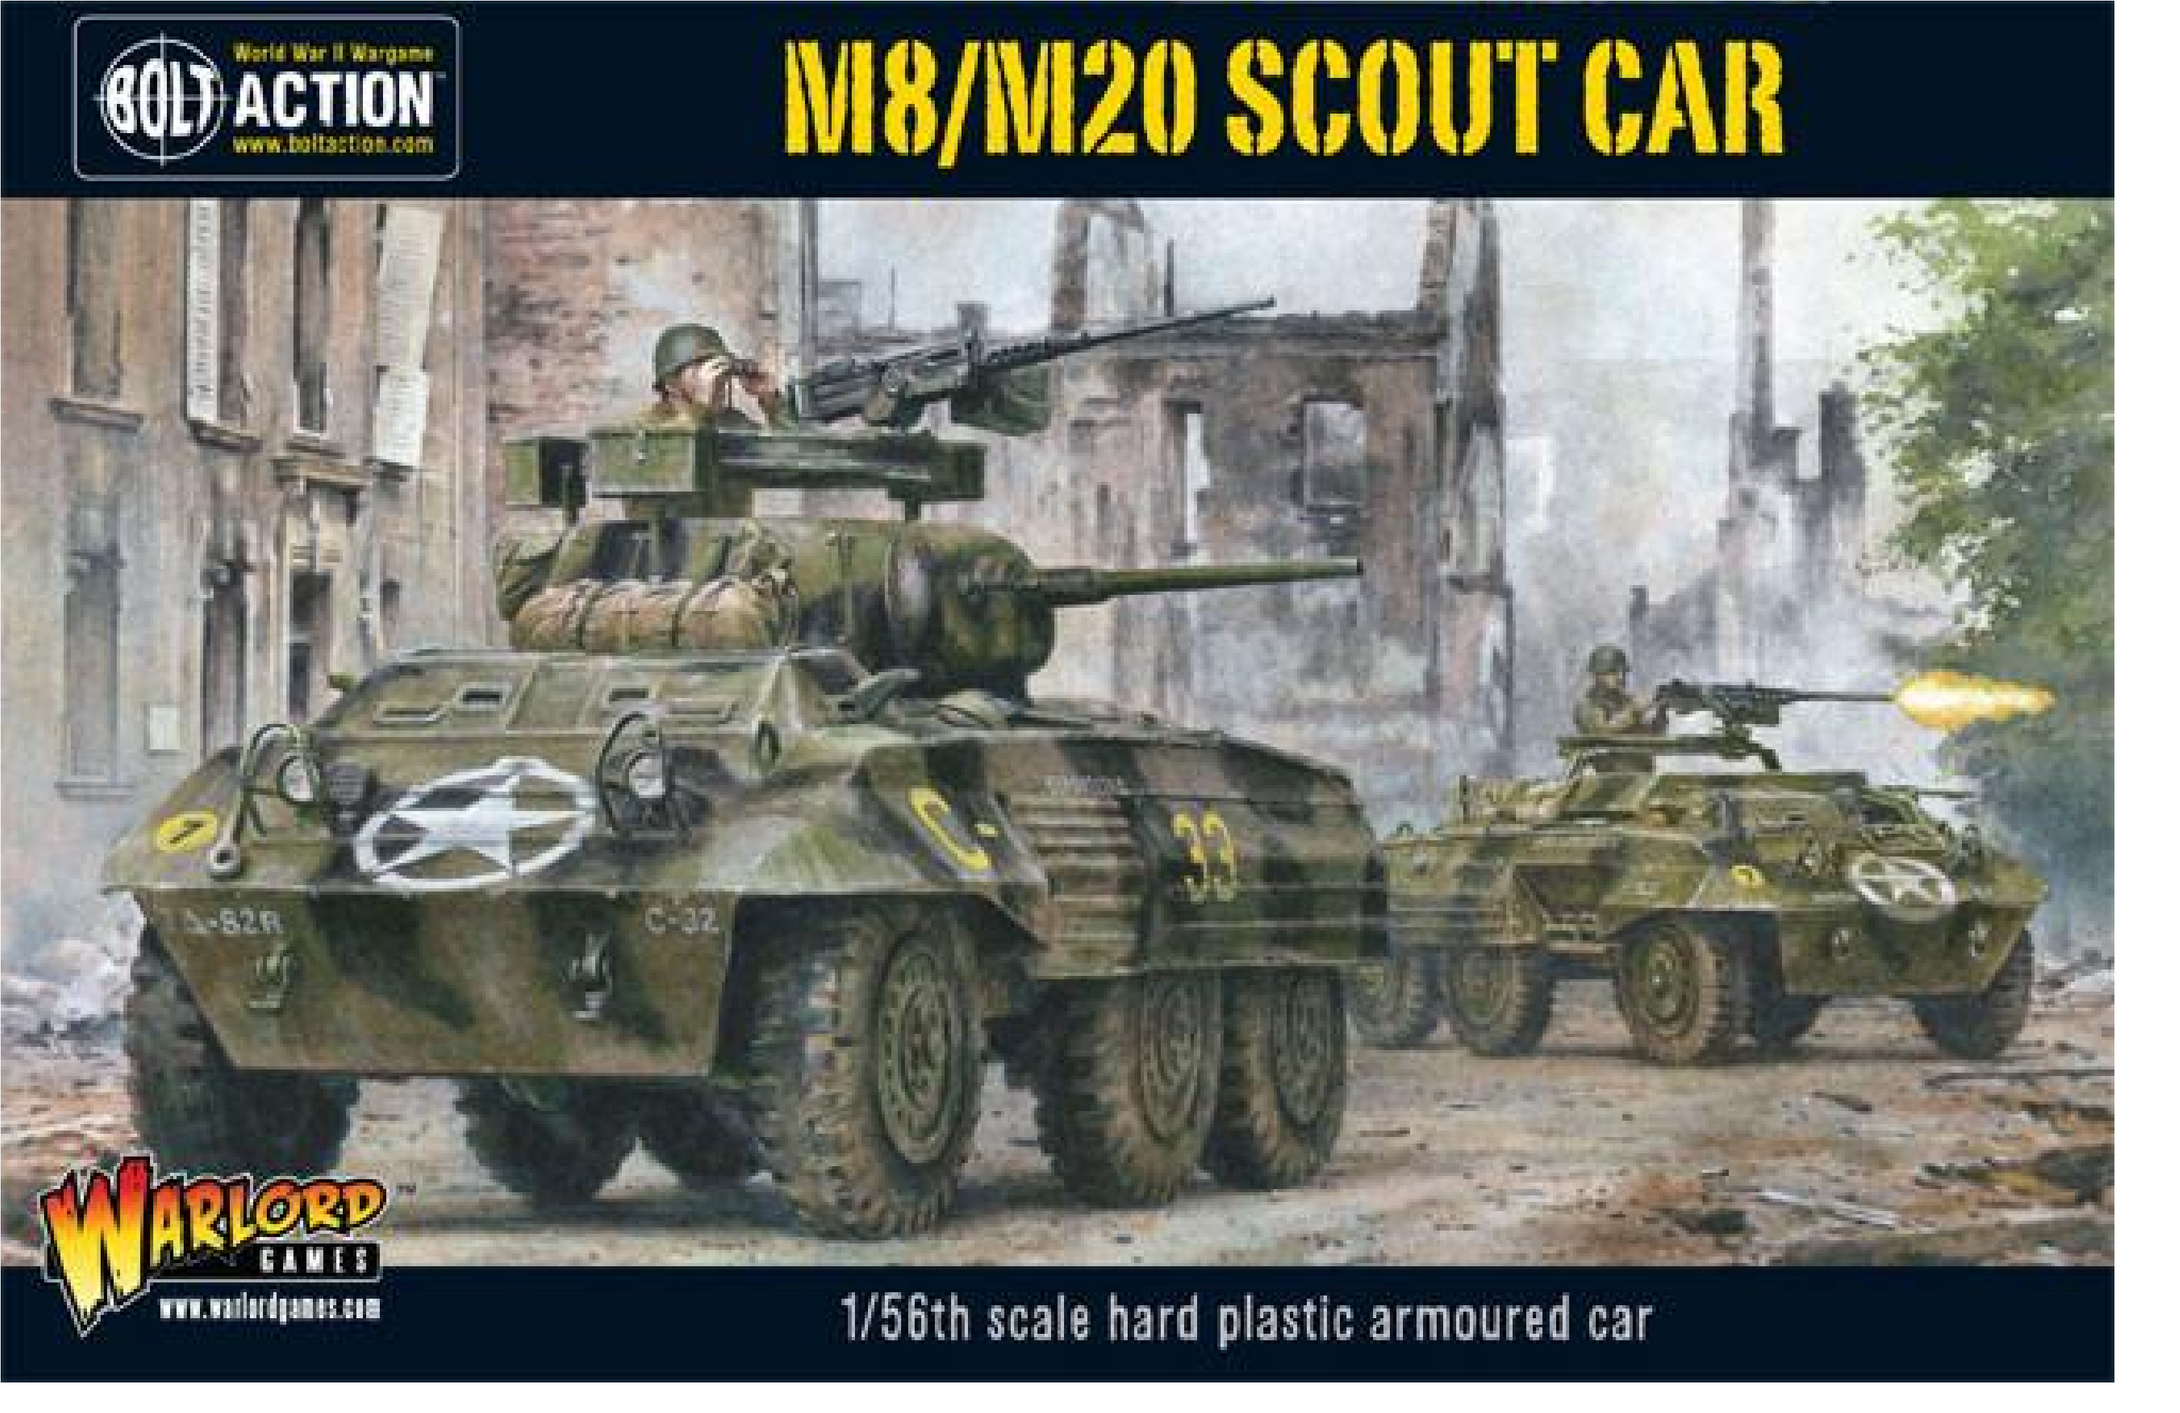 M8/M20 Scout Car